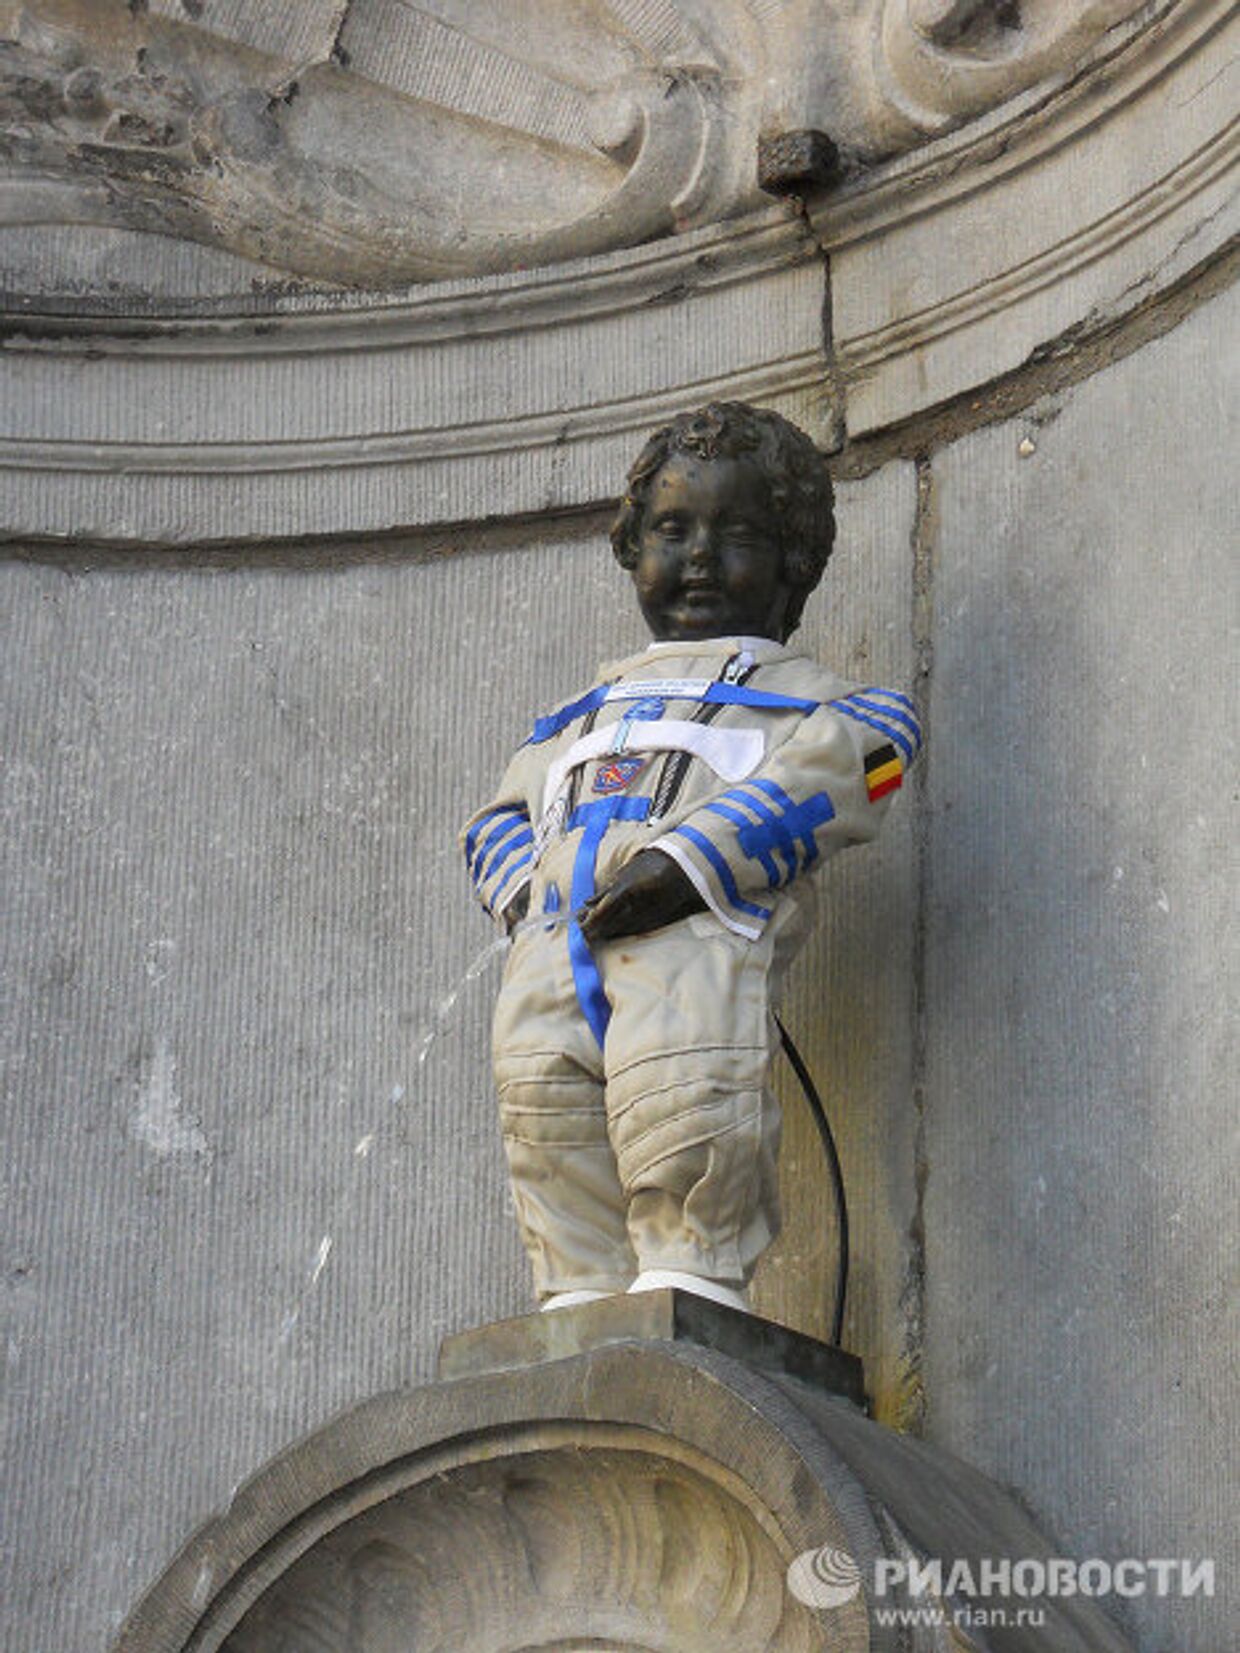 Писающий мальчик в Брюсселе оделся в космический скафандр